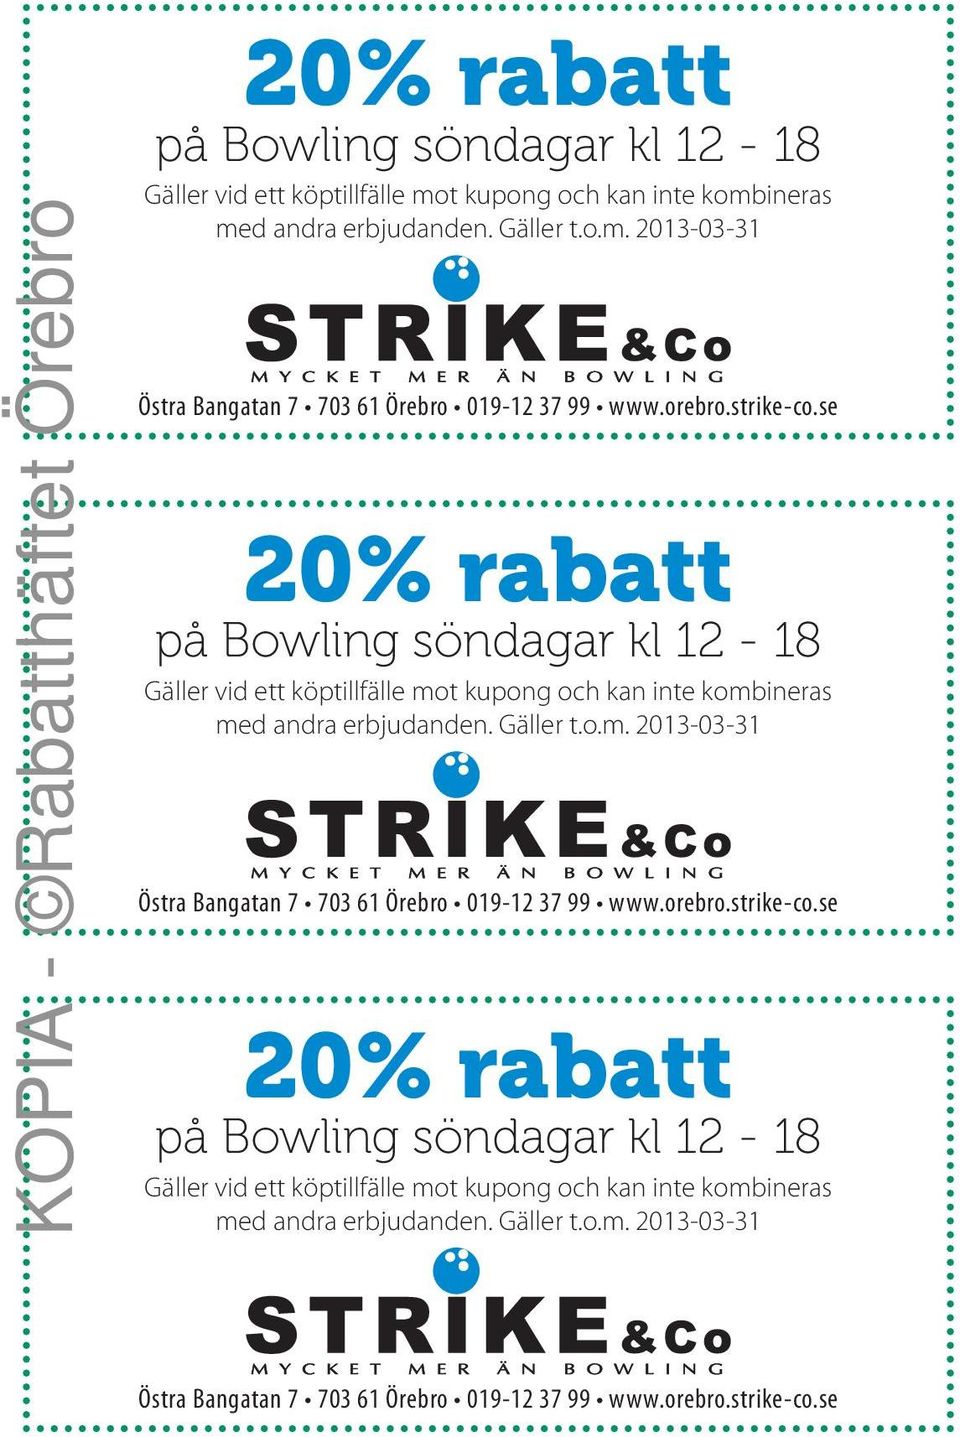 www.orebro.strike-co.se